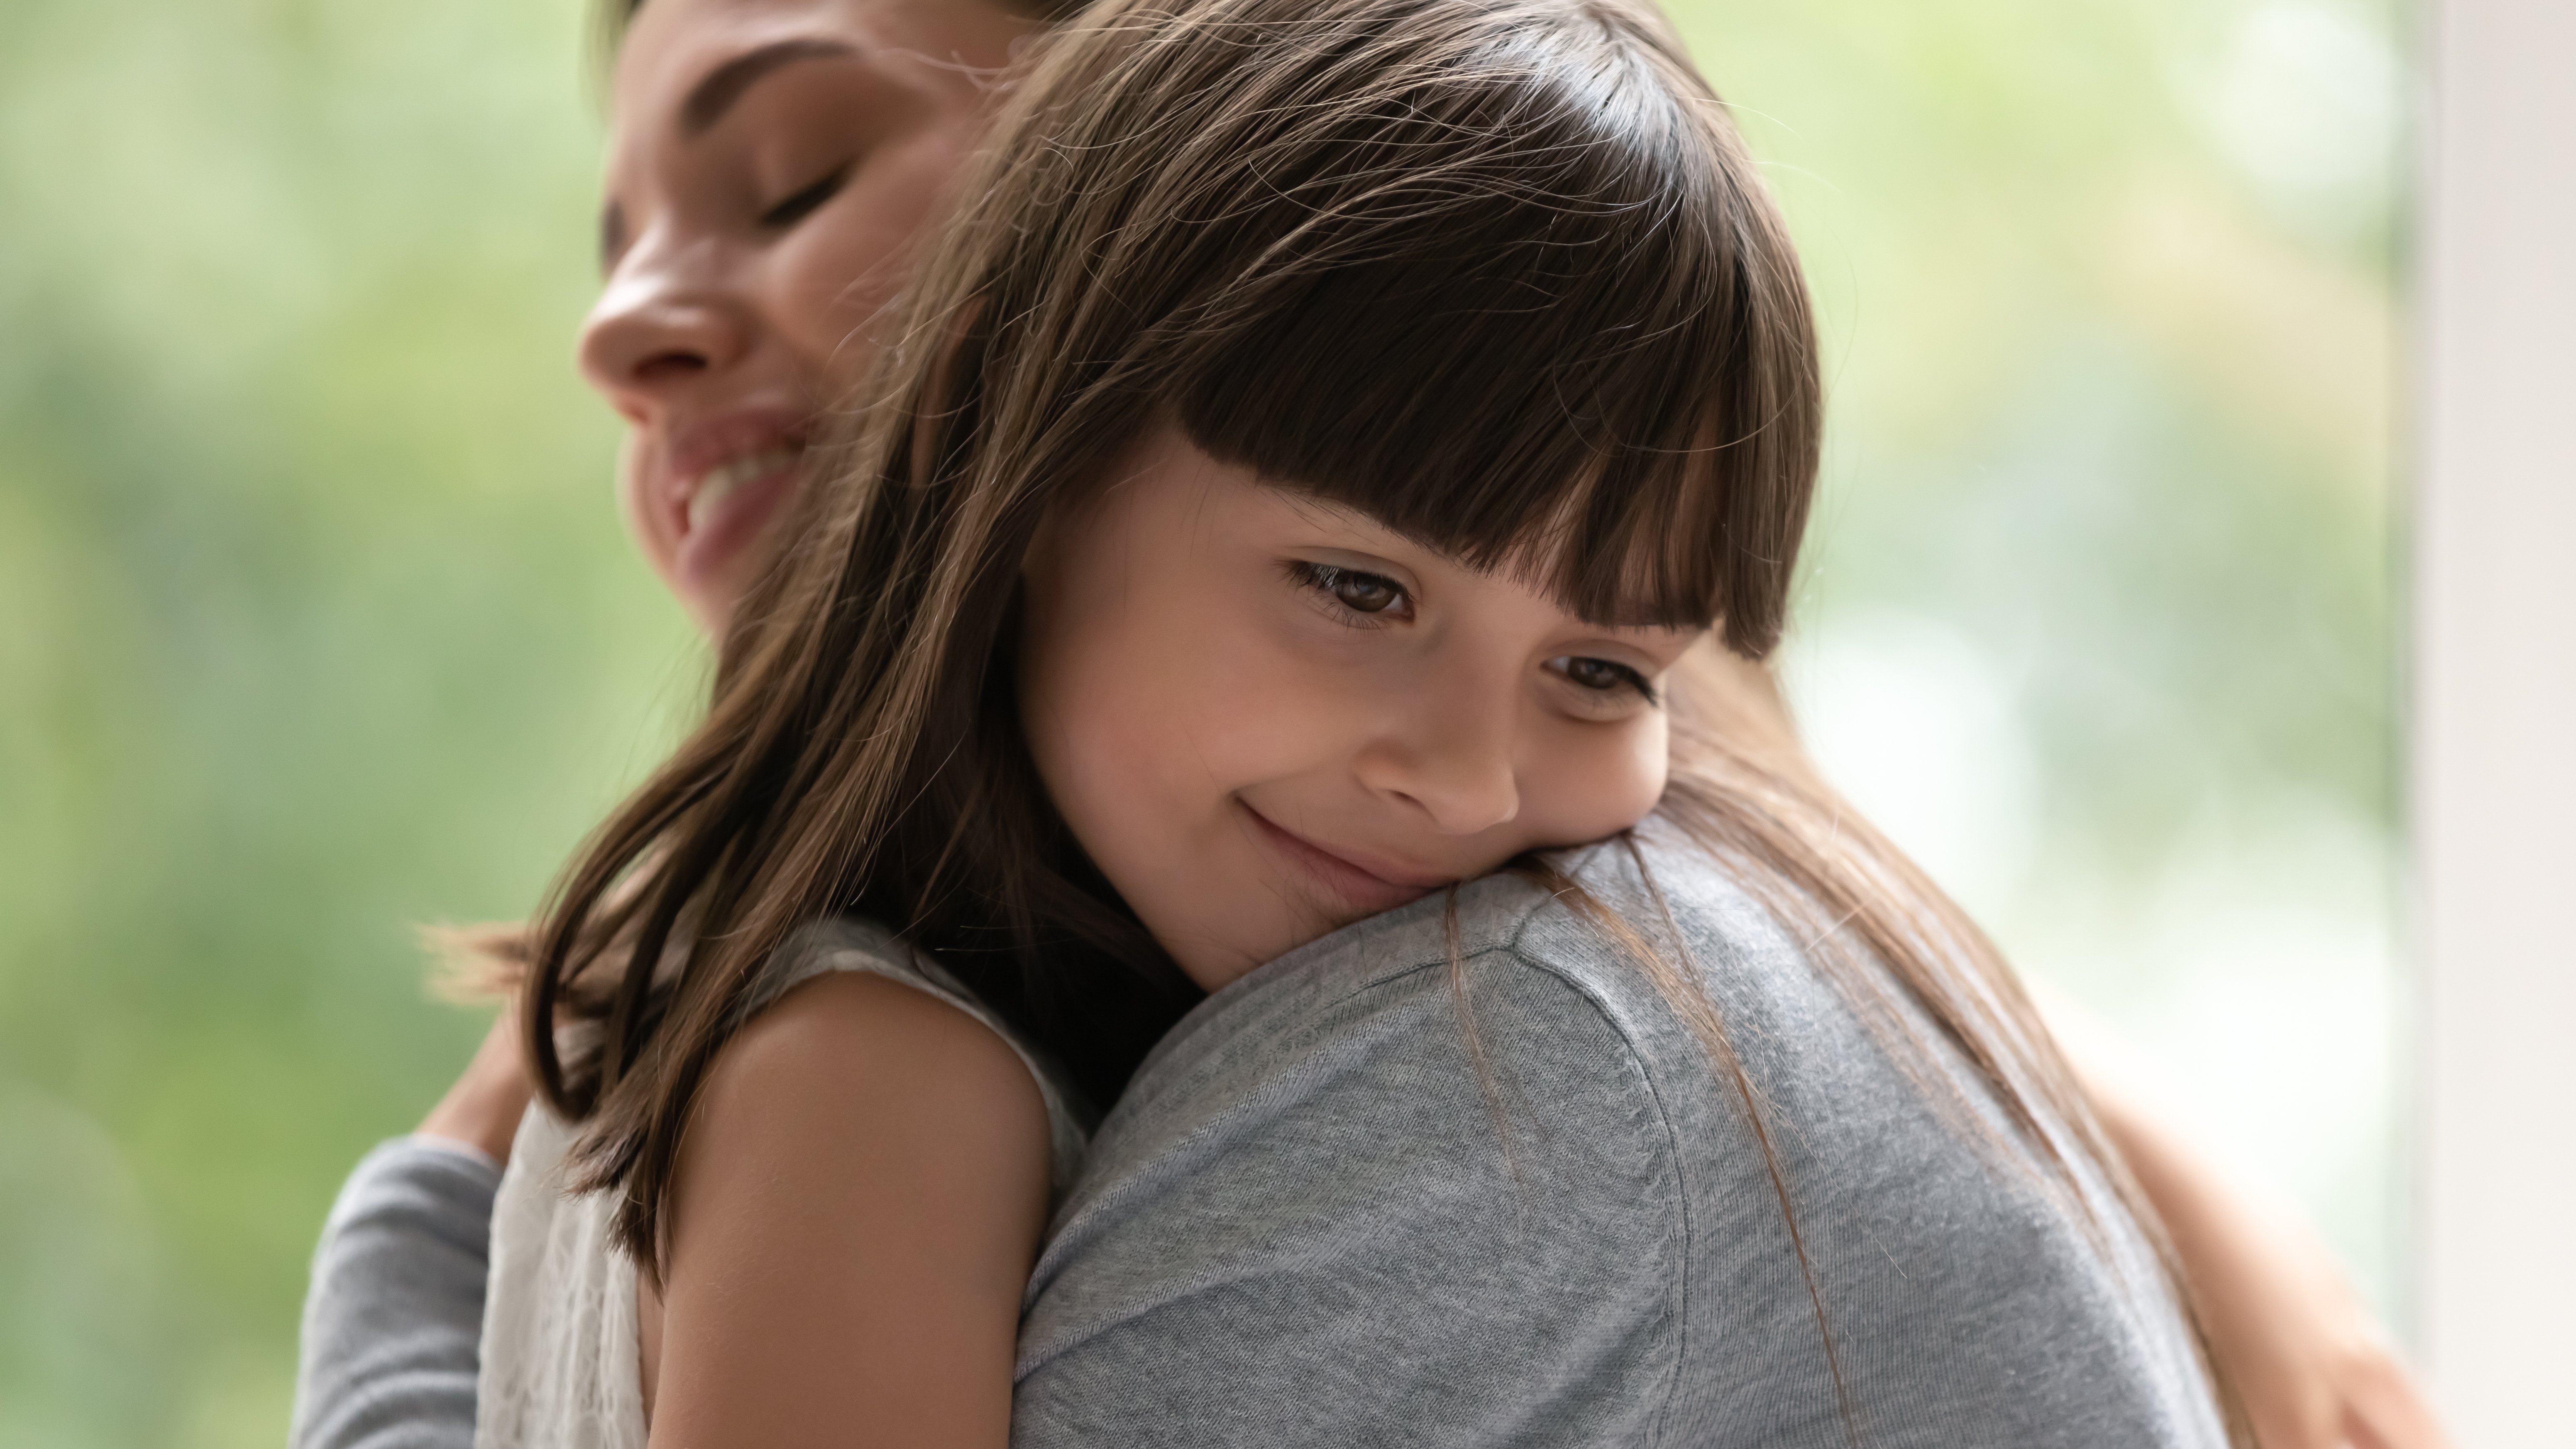 A woman adopting a little girl | Source: Shutterstock